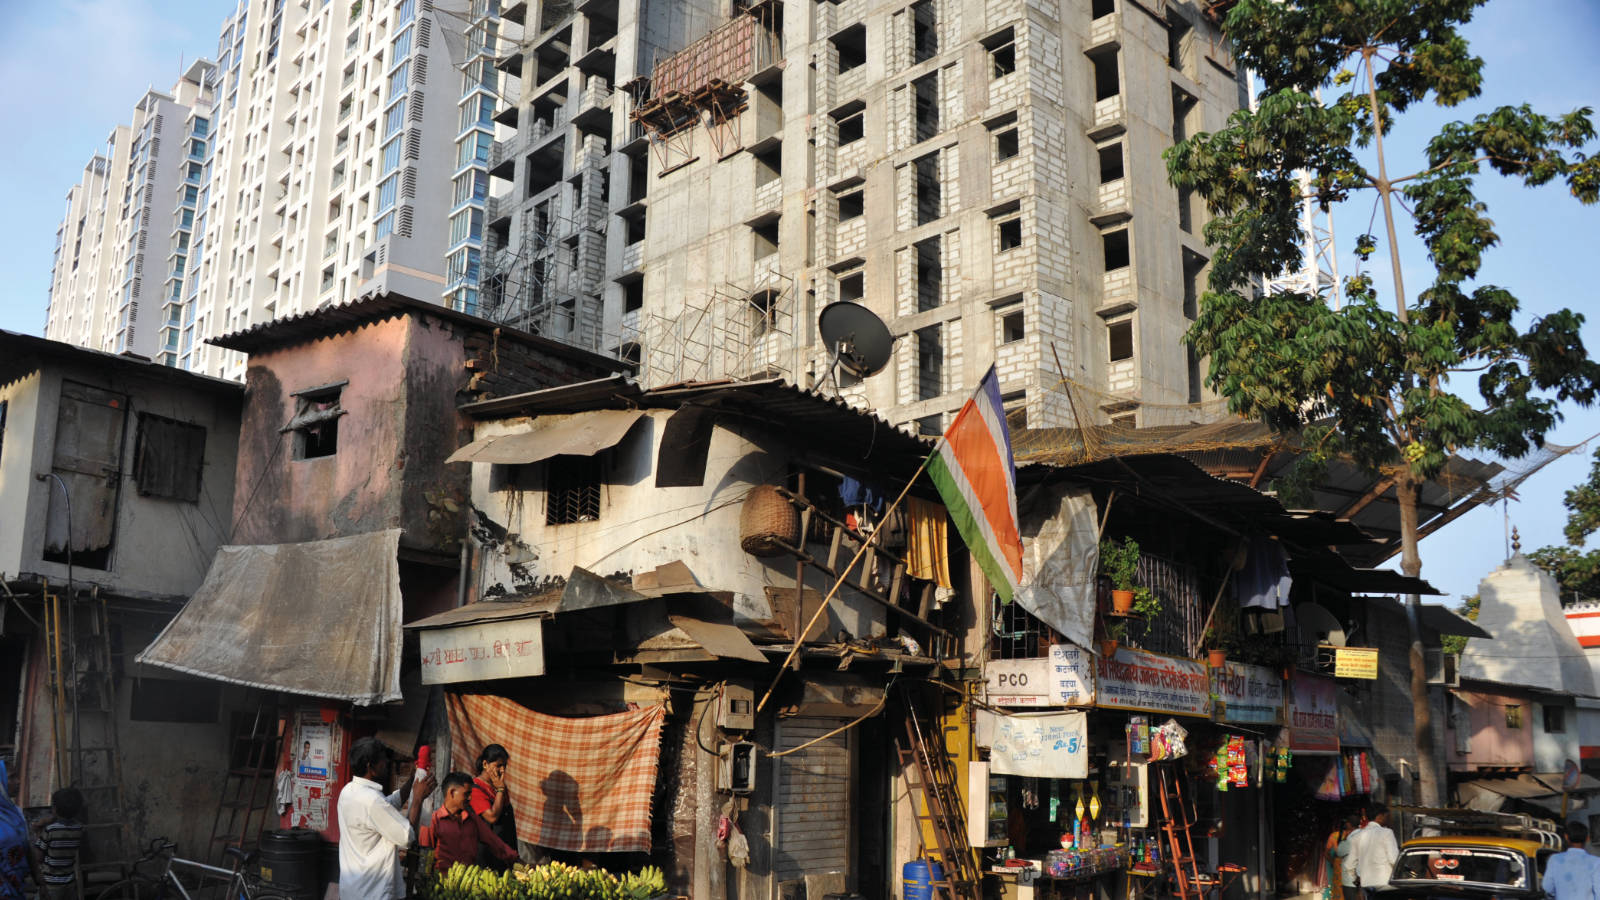 Innerstädtische Disparitäten in Mumbai: Slumsiedlung vor Hochhäusern